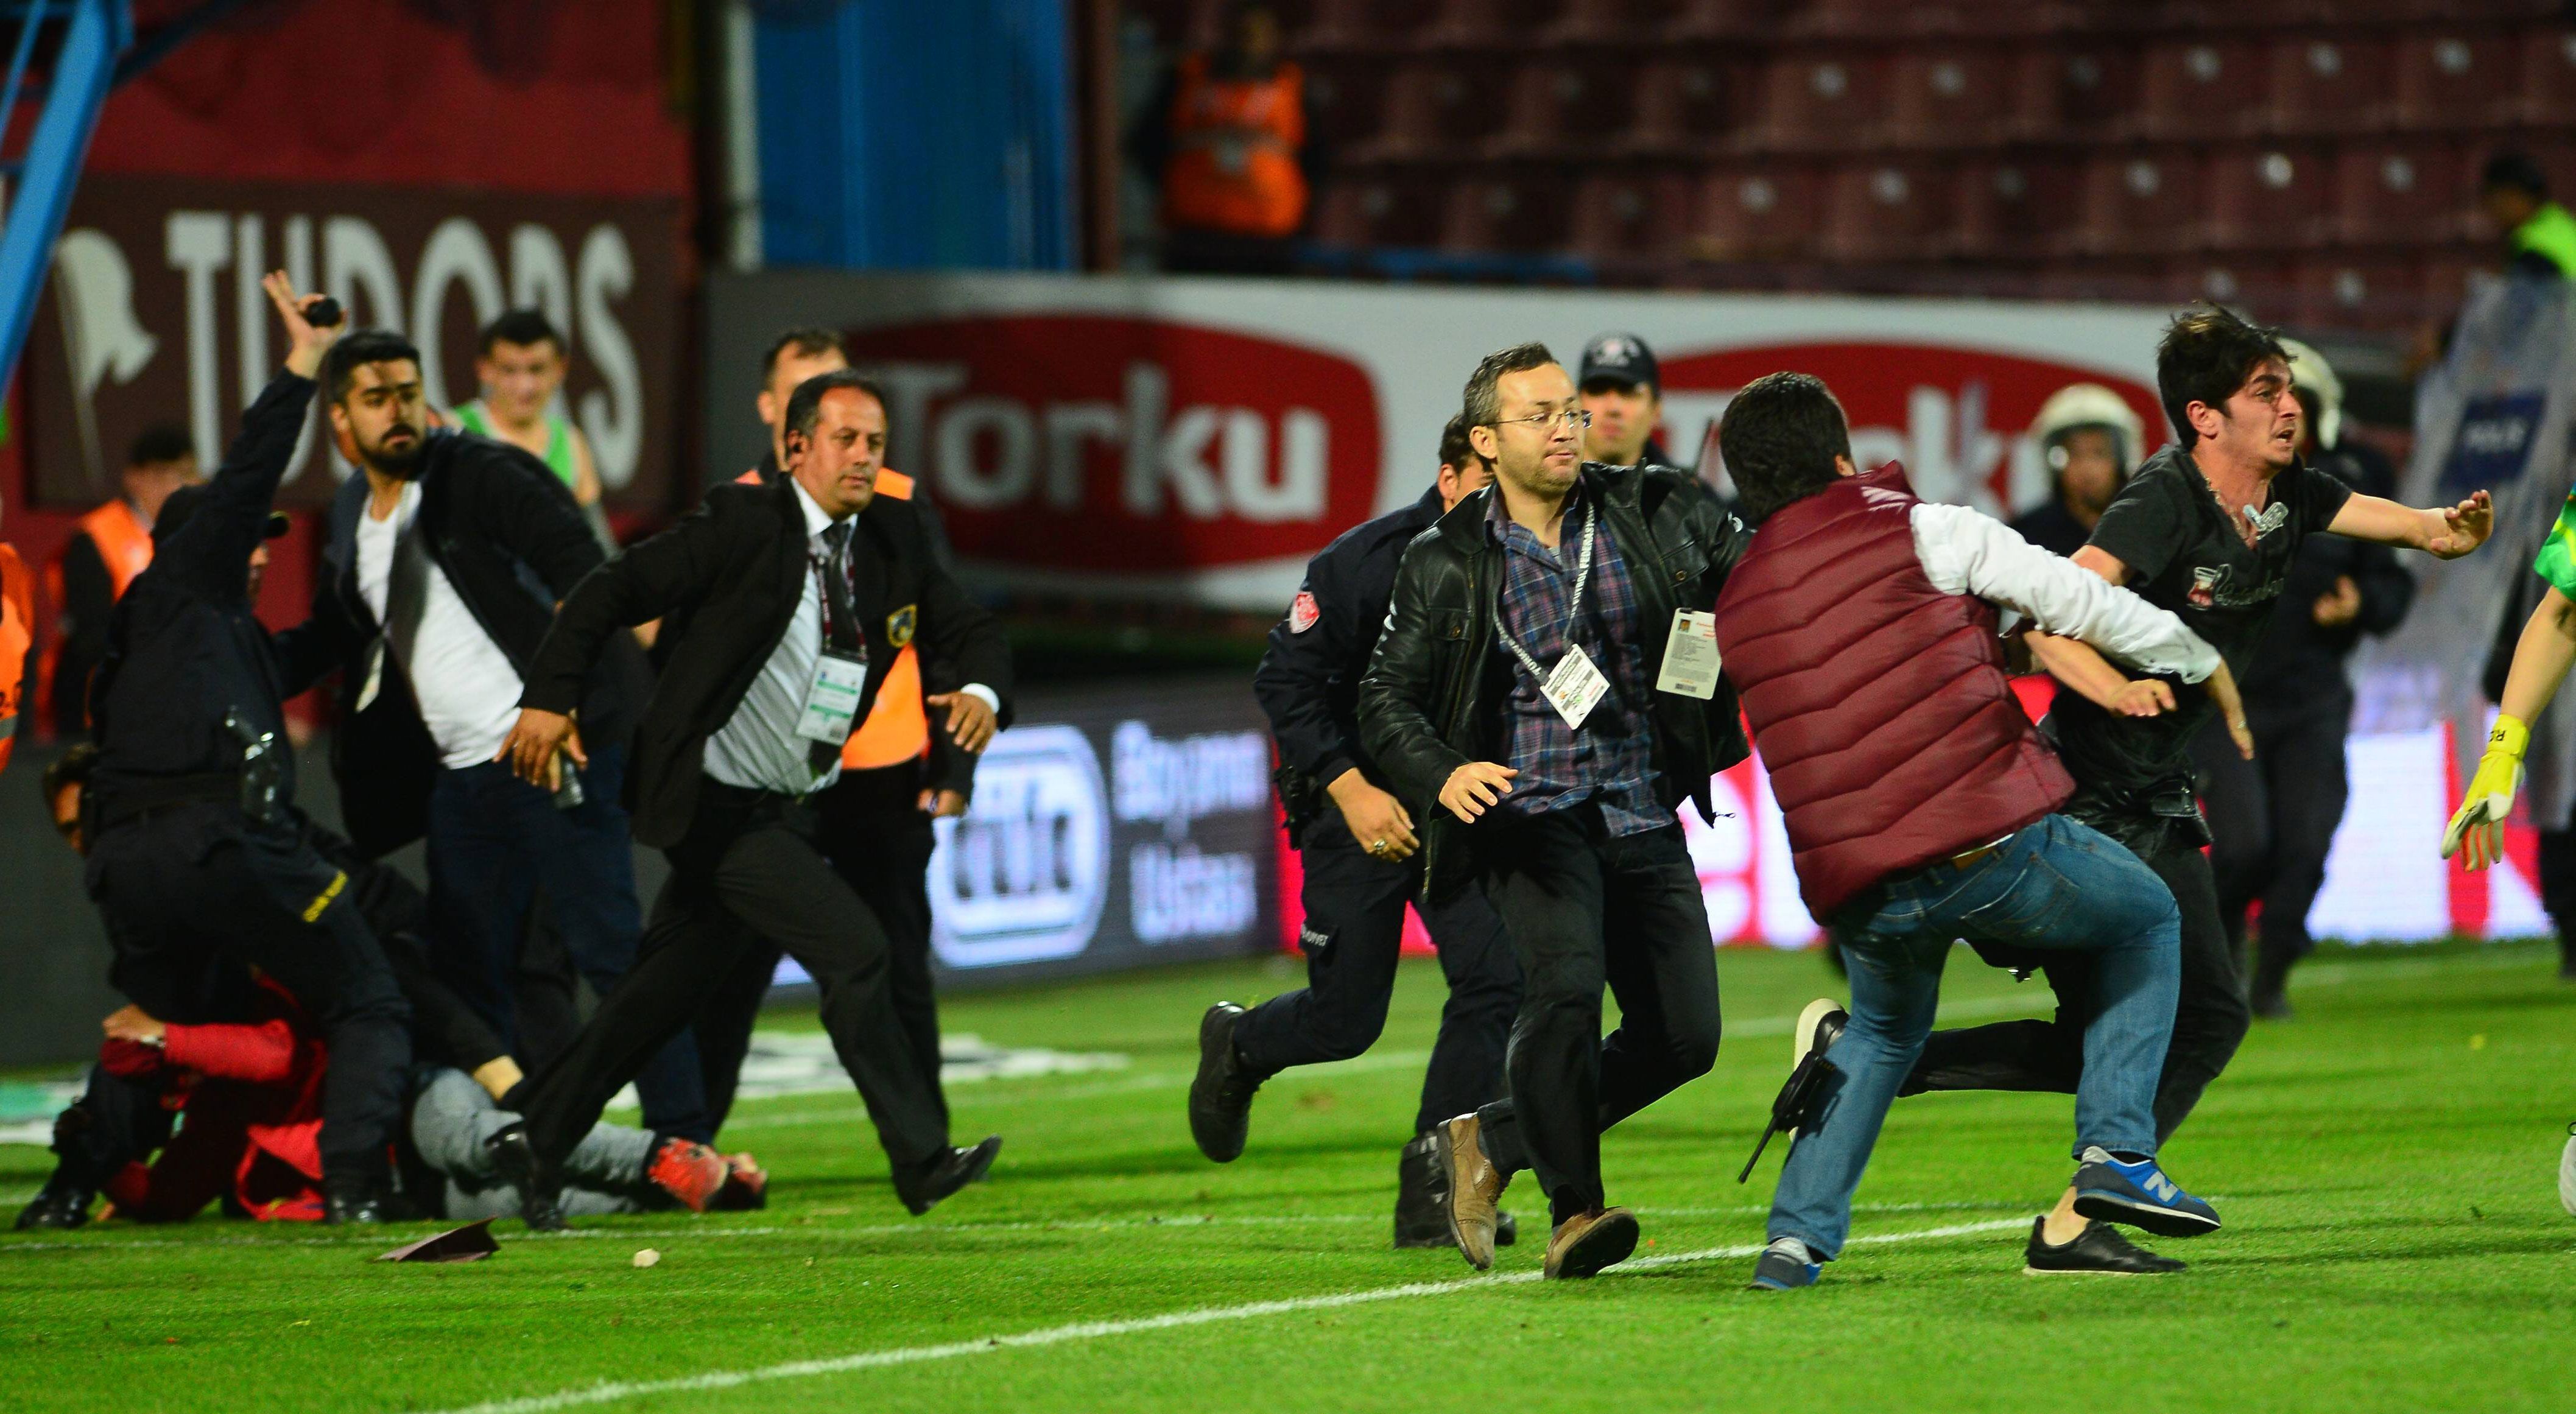 
                <strong>Trabzonspor gegen Fenerbahce</strong><br>
                Dann passiert das Unfassbare: Ein Mann prügelt auf Tor-Schiedsrichter Volkan Bayarslan ein. Erst dannach können die Sicherheitkräfte den Angreifer überwältigen.
              